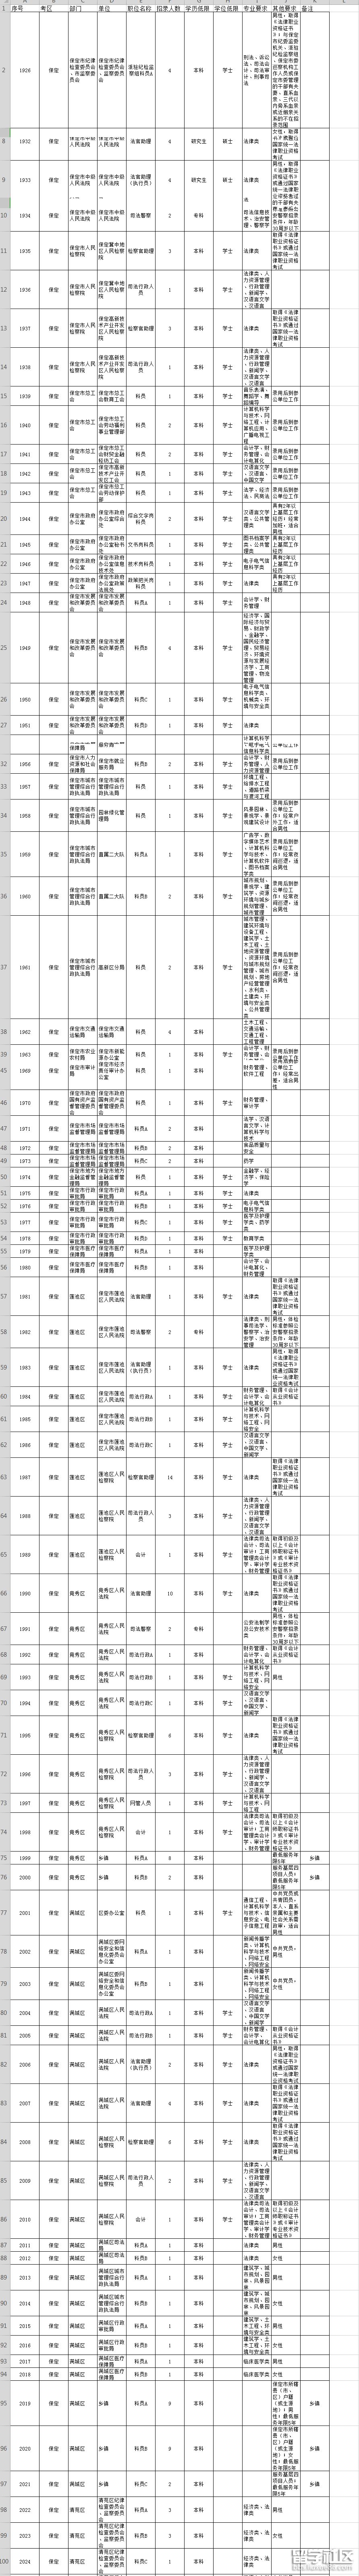 2019年河北省公务员考试职位表(保定市)